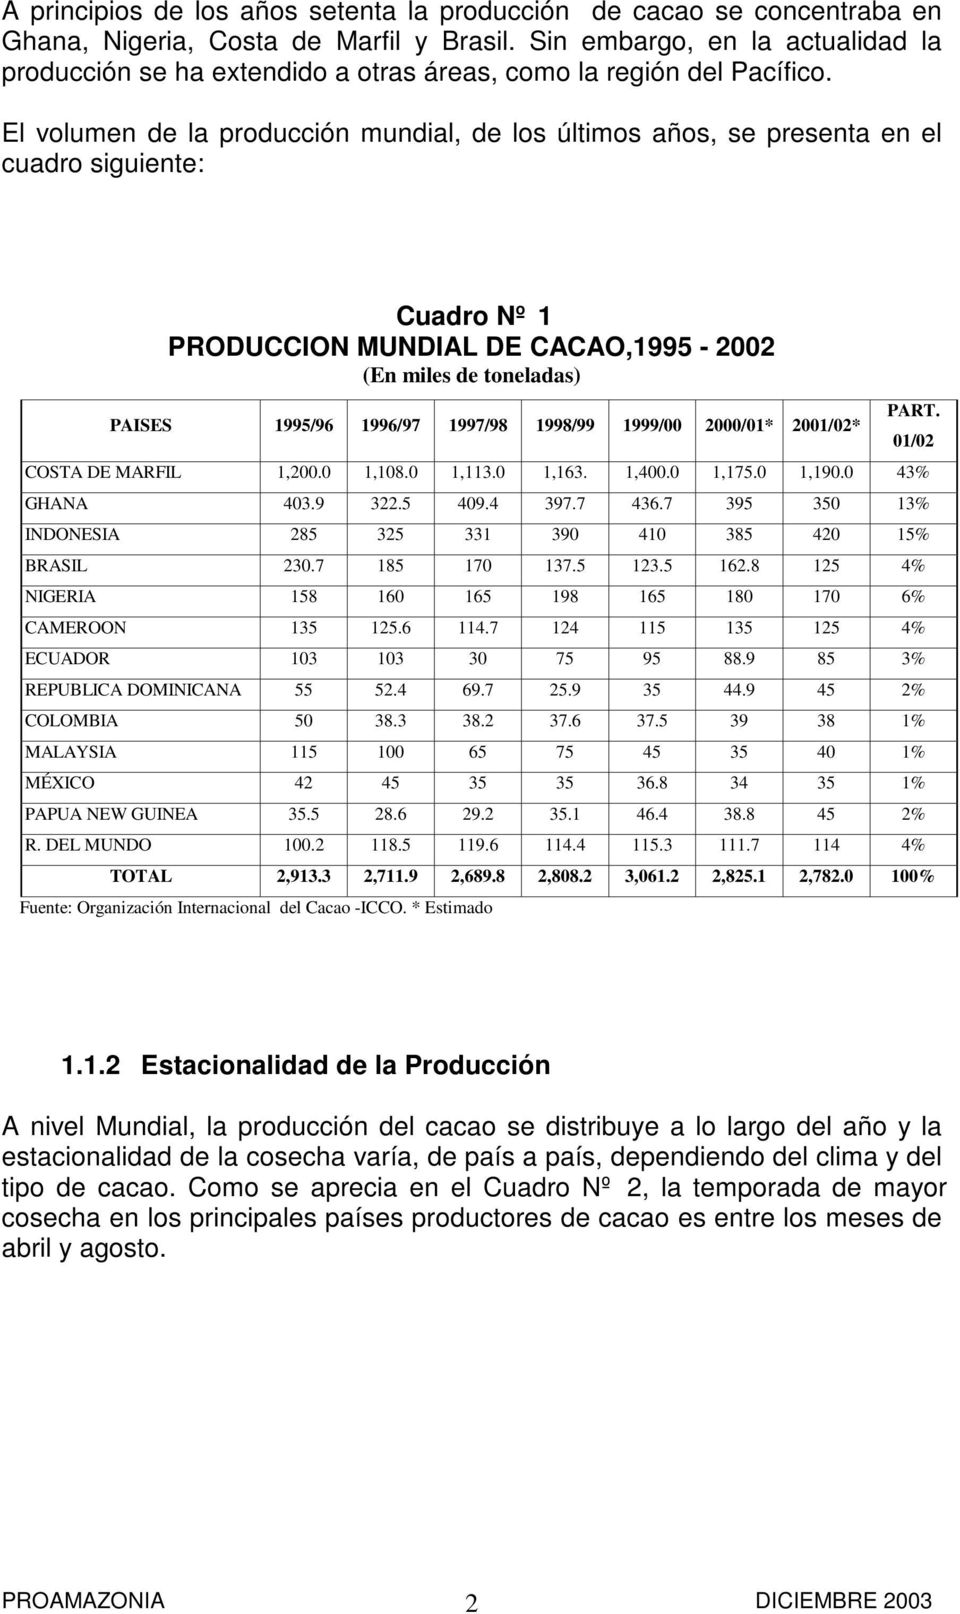 El volumen de la producción mundial, de los últimos años, se presenta en el cuadro siguiente: Cuadro Nº 1 PRODUCCION MUNDIAL DE CACAO,1995-2002 (En miles de toneladas) PAISES 1995/96 1996/97 1997/98